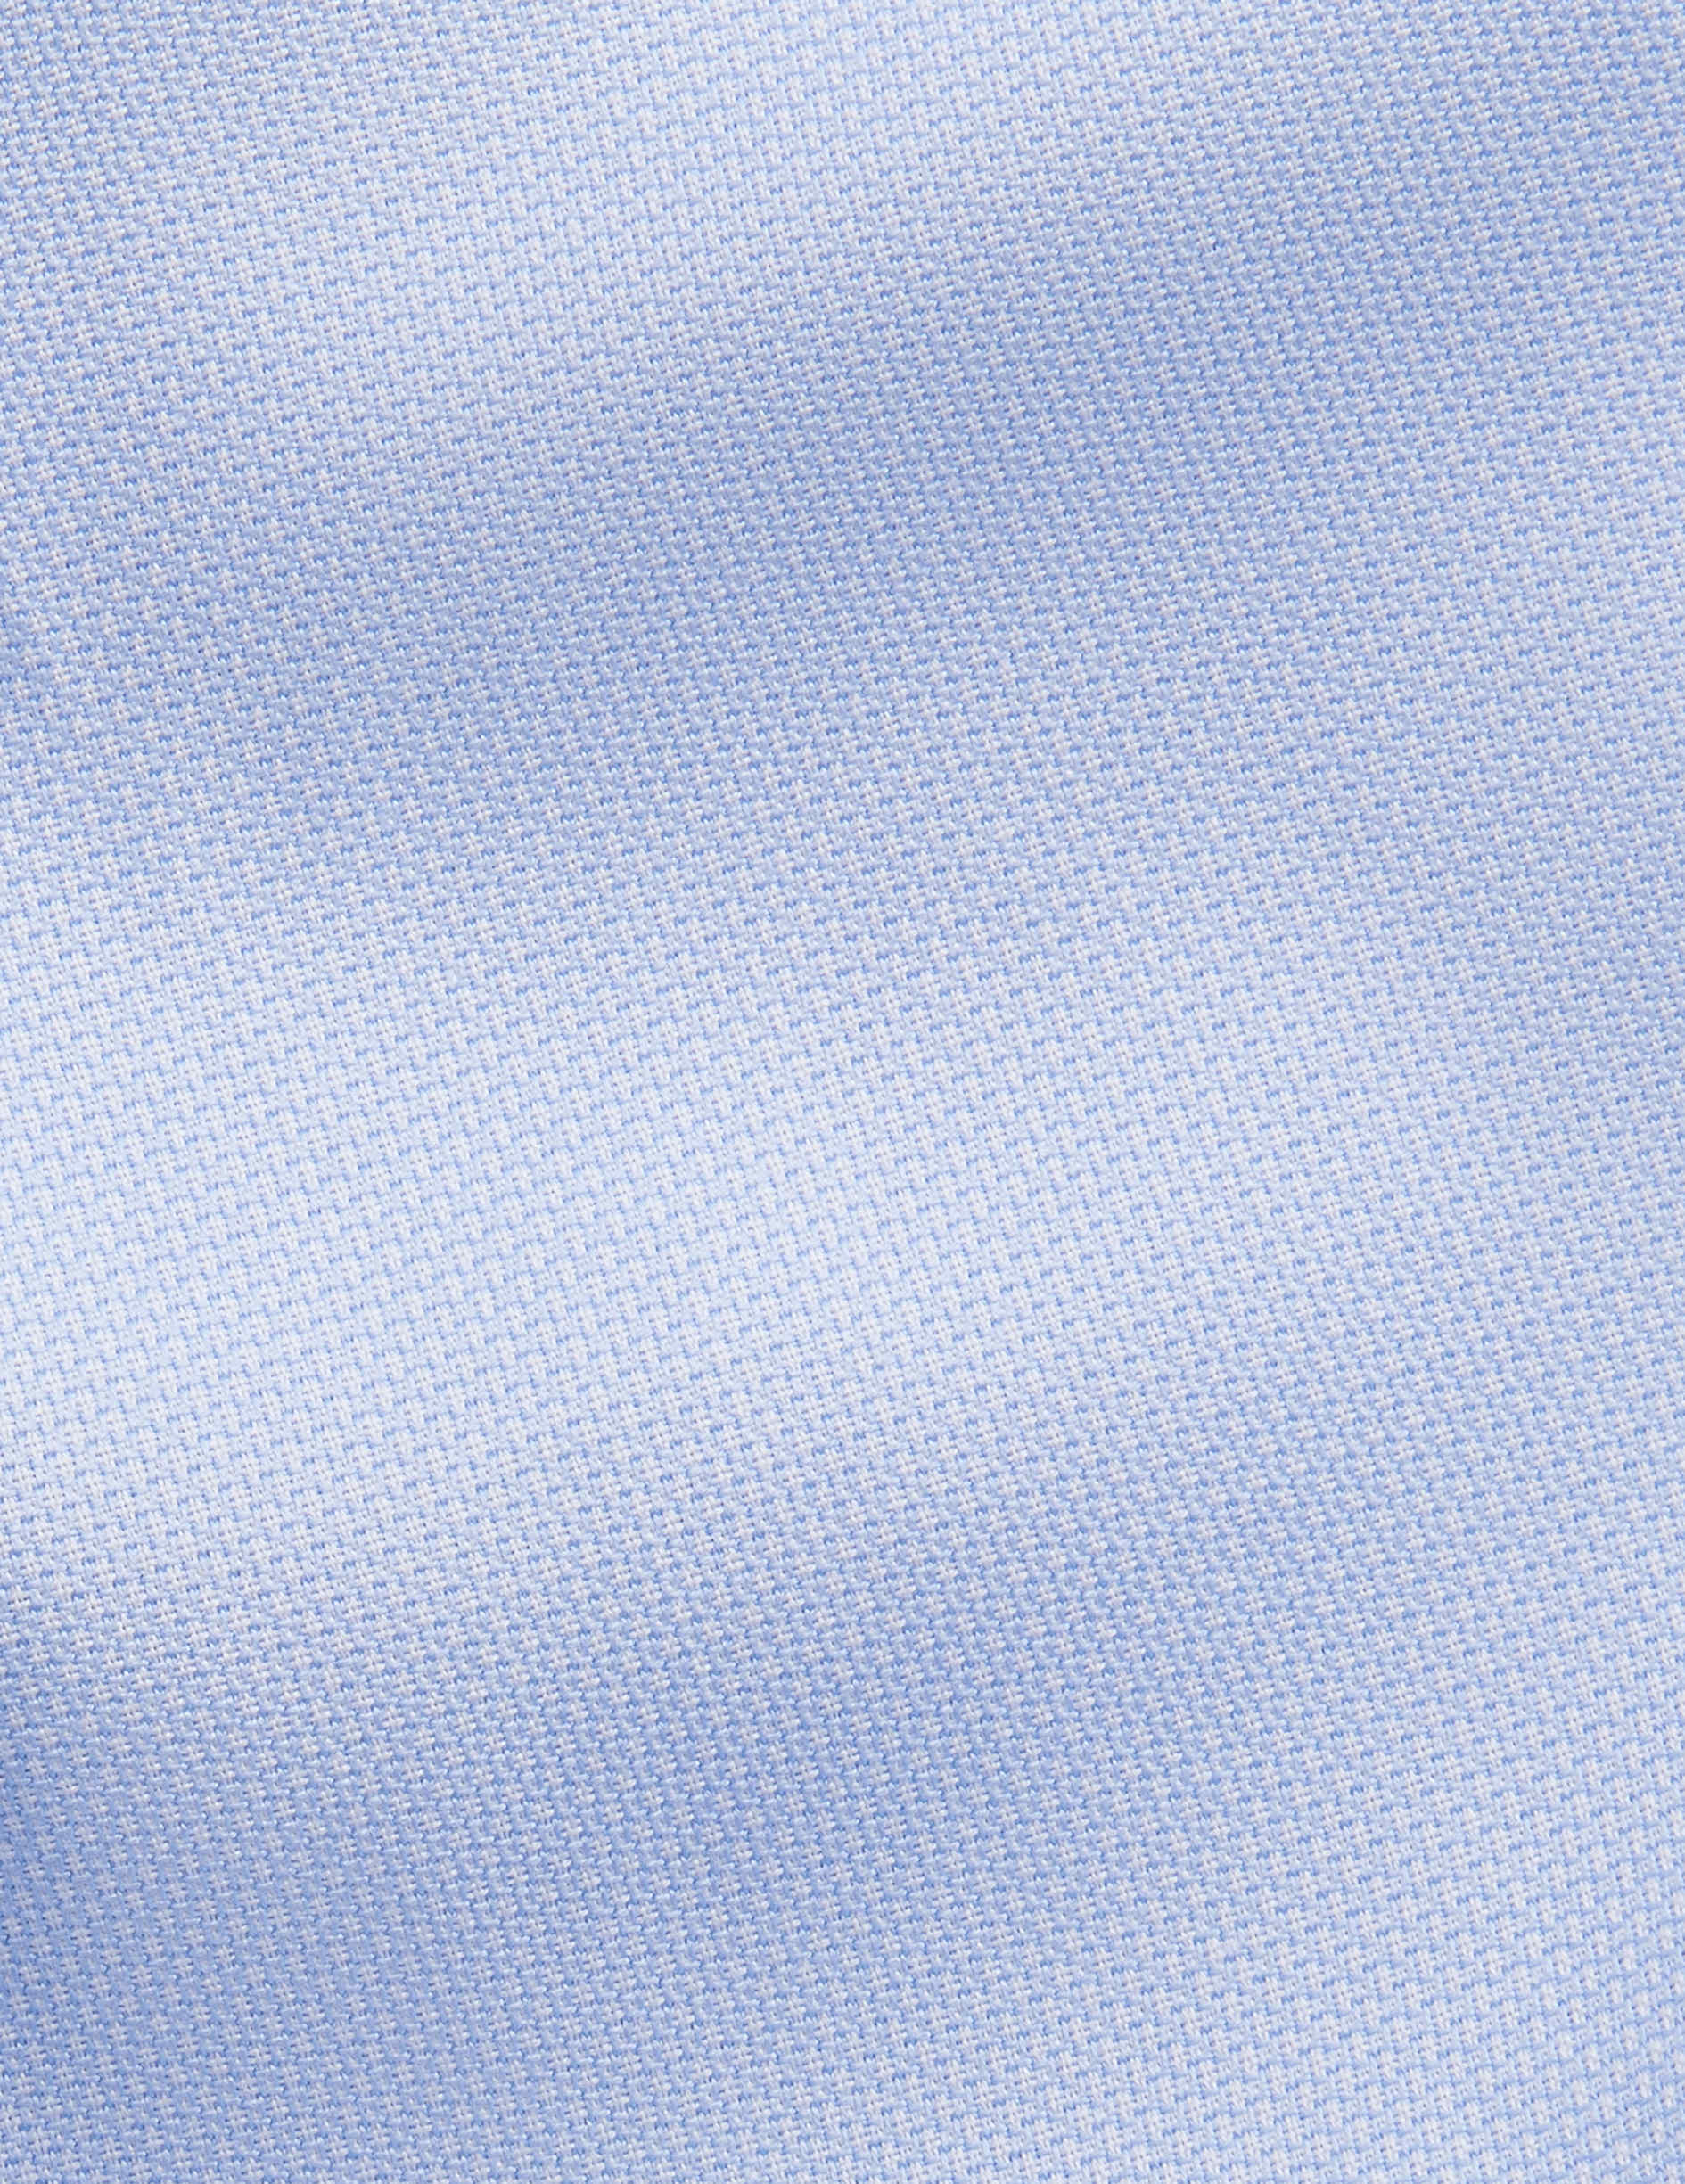 Chemise Semi-ajustée bleue - Façonné - Col Italien